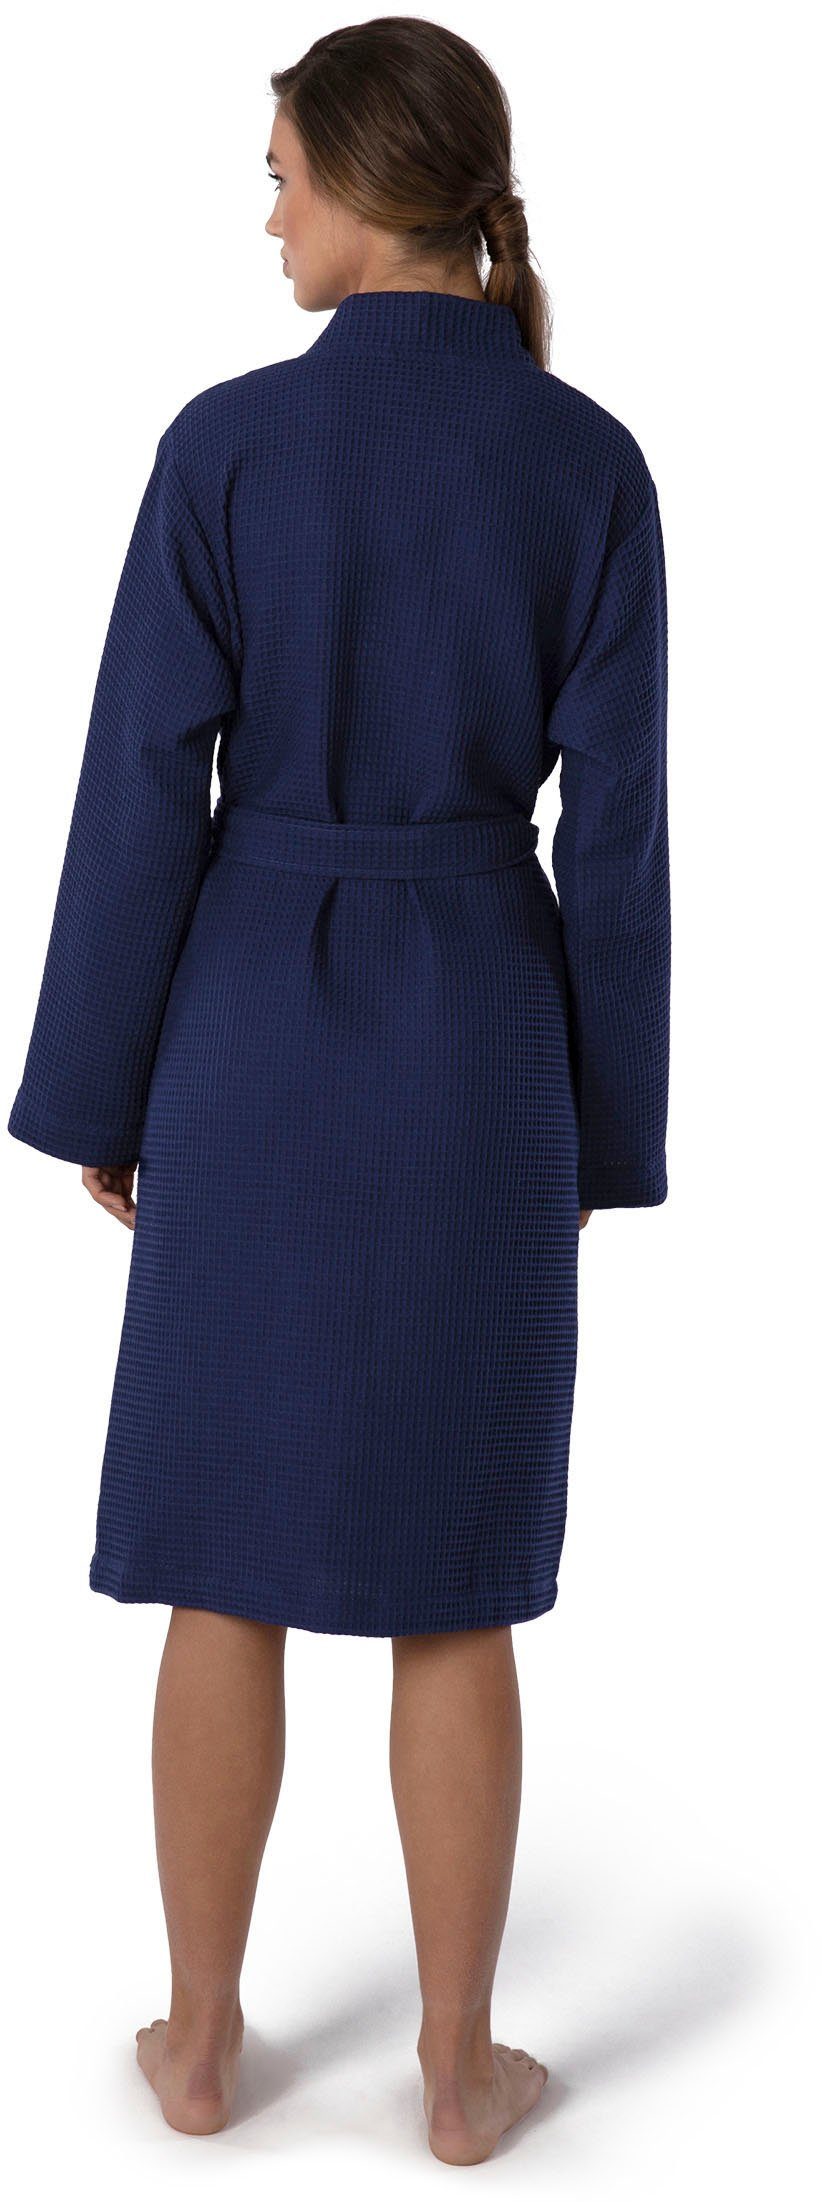 Kimono-Kragen, Möve Gürtel, Piquée-Oberfläche dunkelblau Piqué, Kurzform, Homewear, Kimono